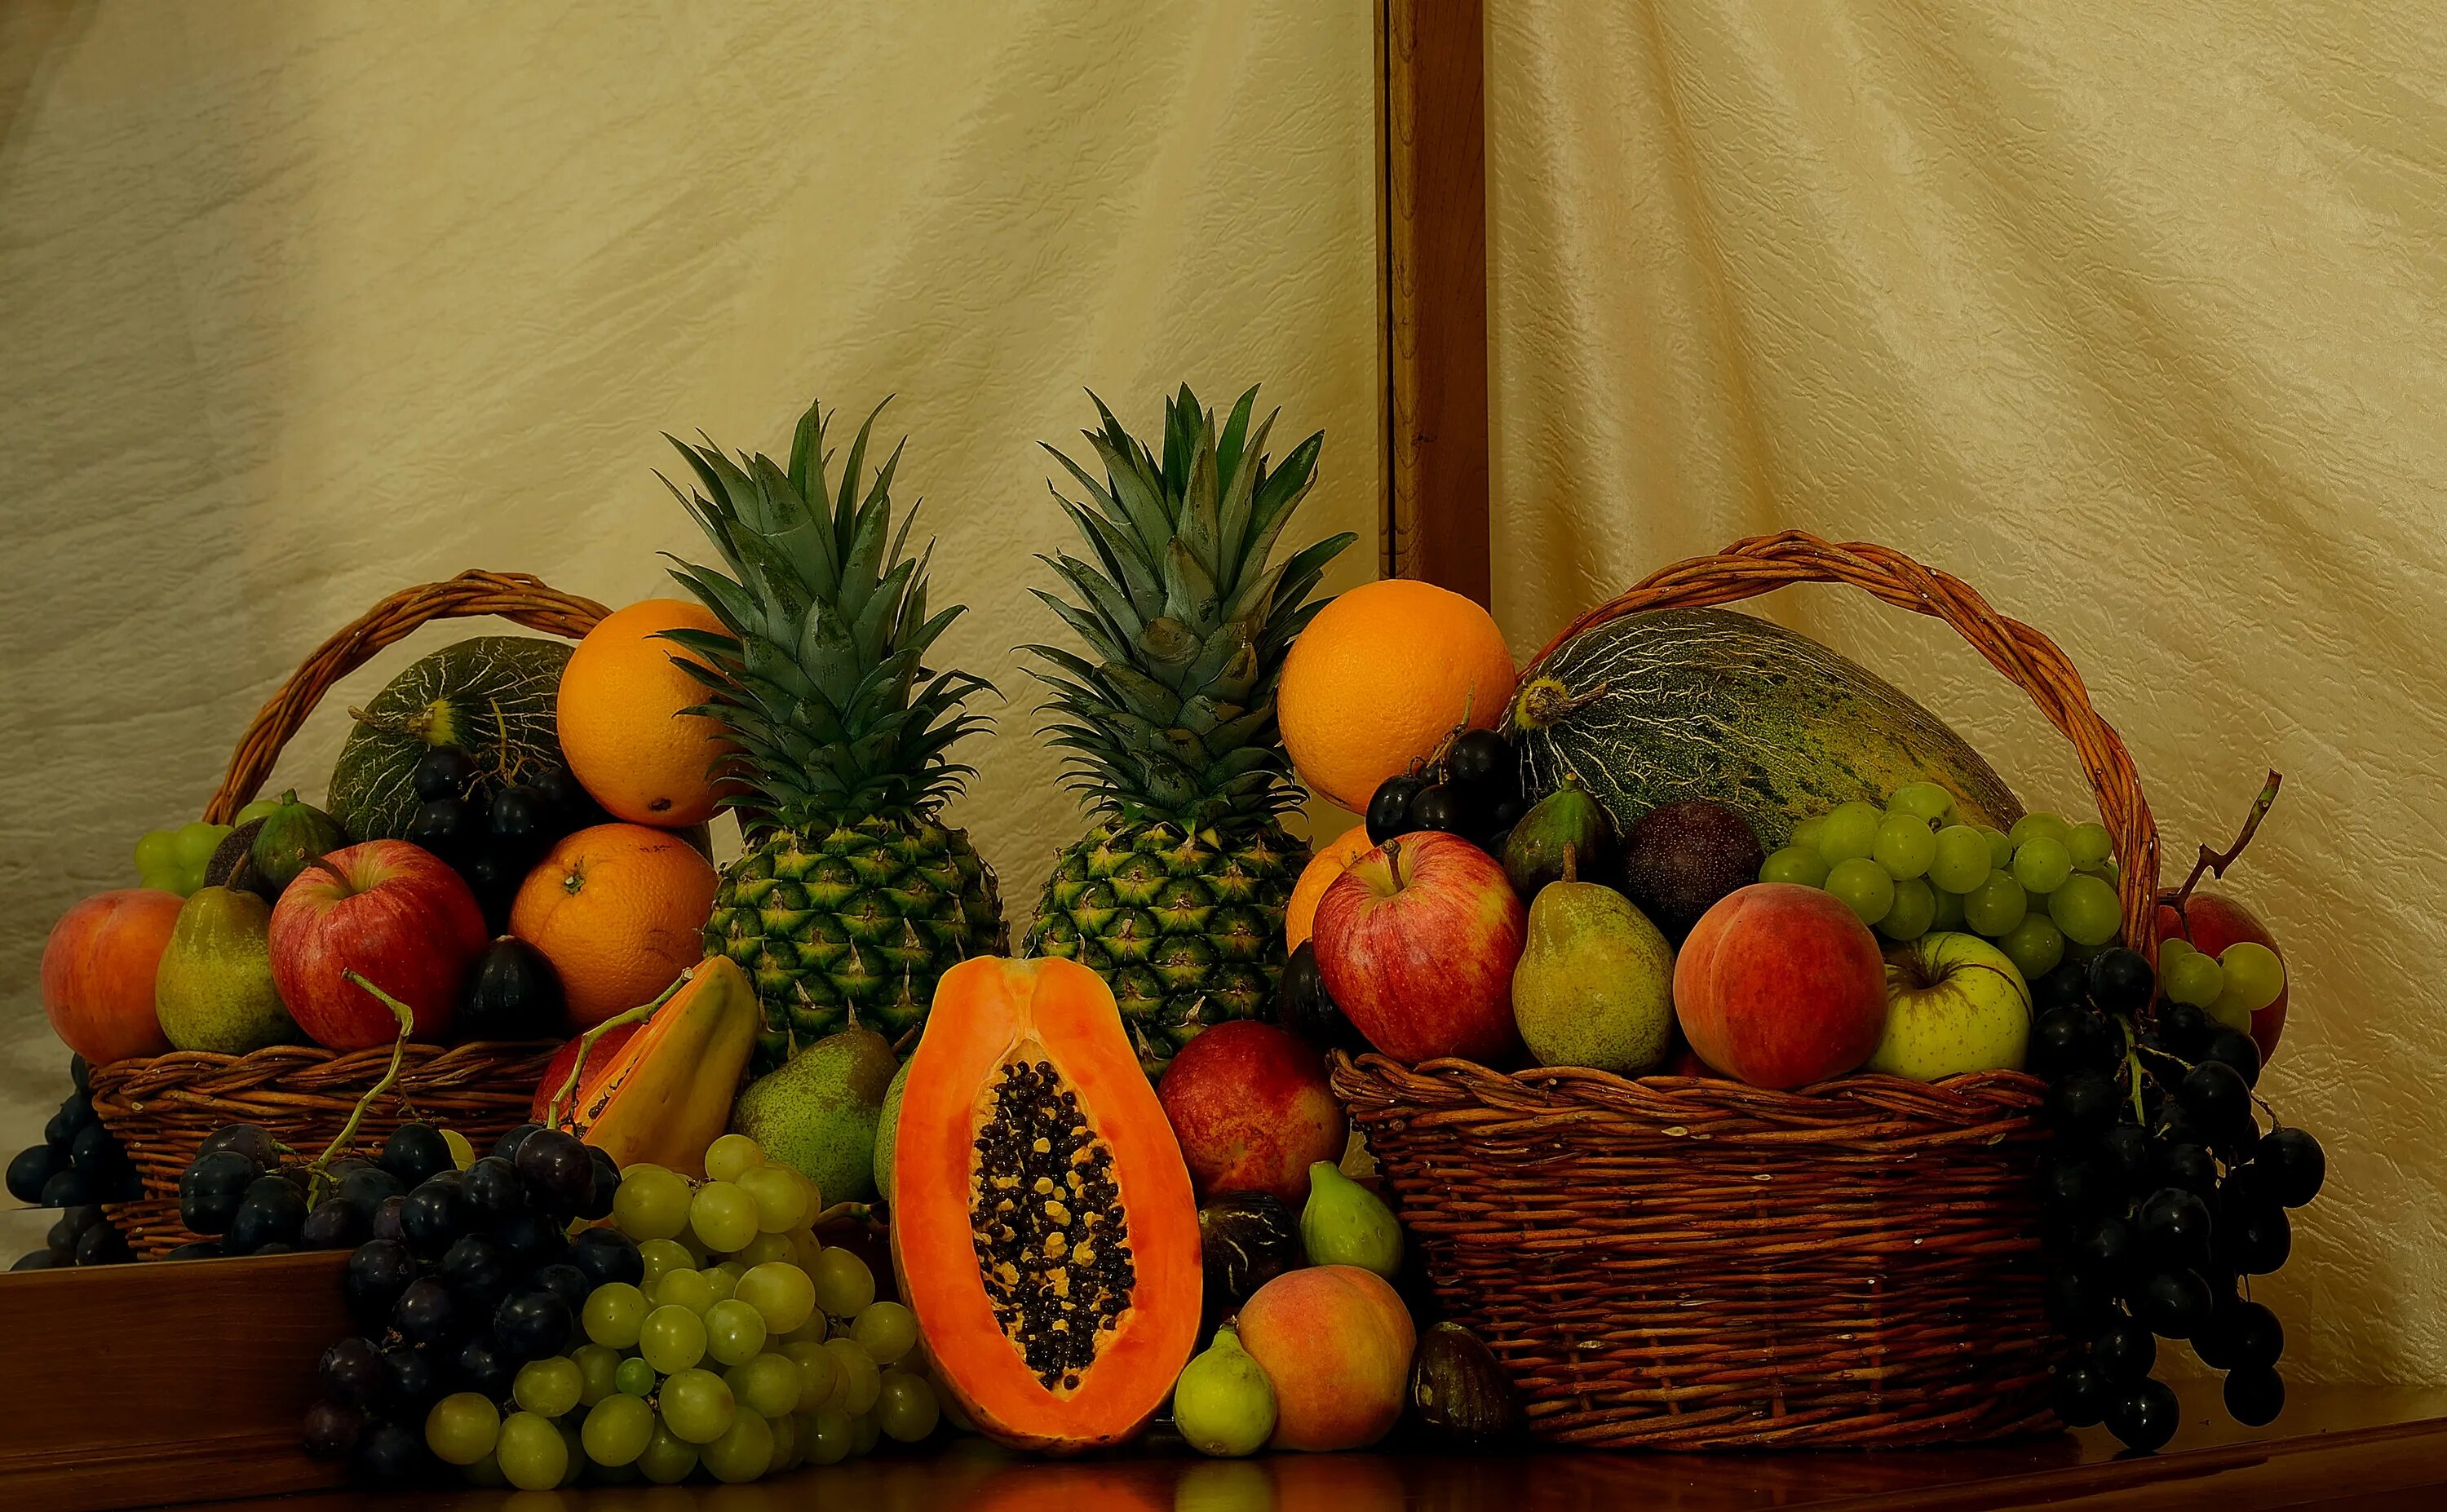 2 12 всех фруктов составляют персики. Фрукты. Фрукты на столе. Корзина с овощами и фруктами. Корзина фруктов на столе.